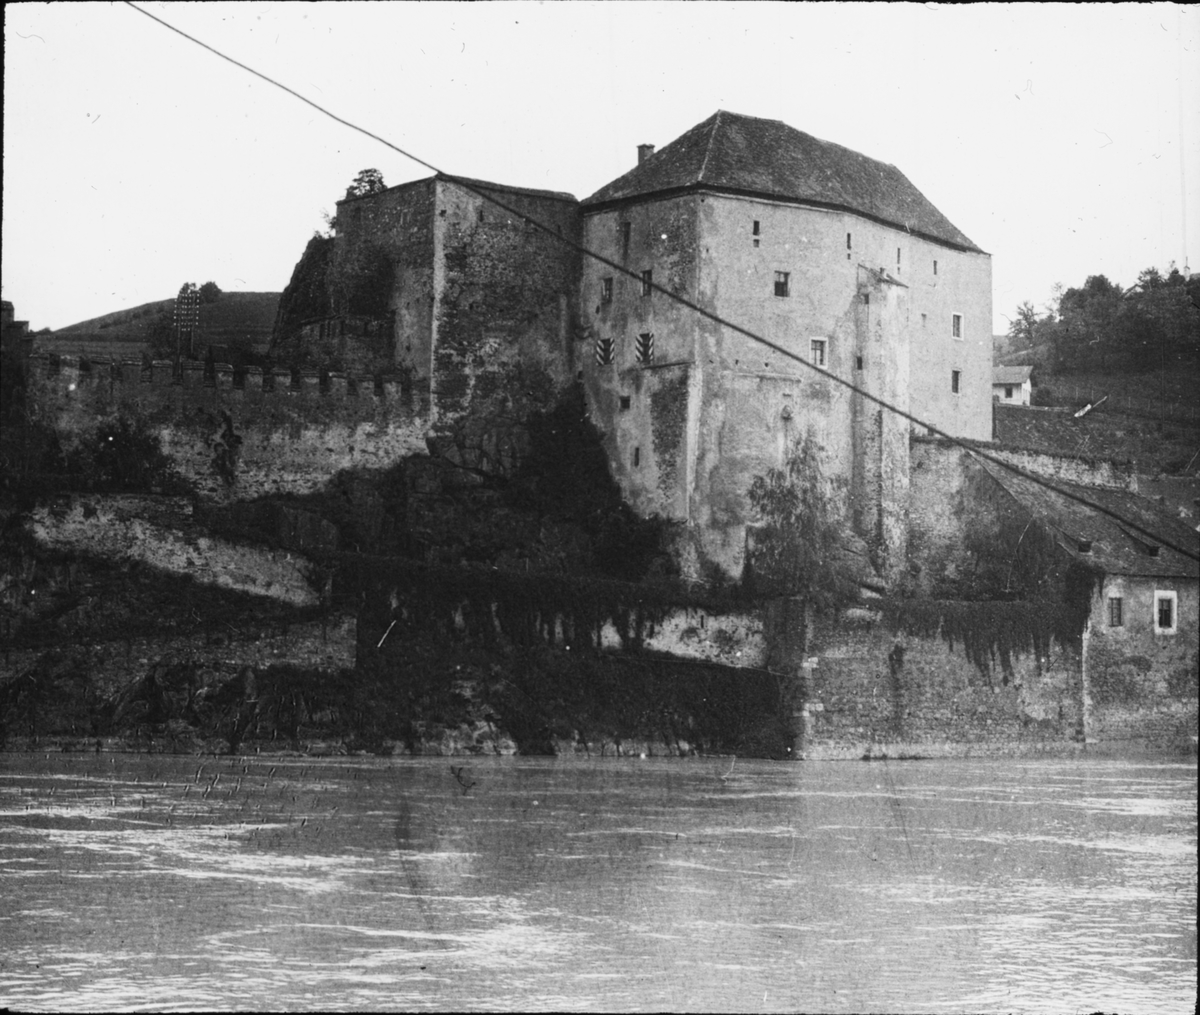 Skioptikonbild med motiv av Passau Burg, slottet i Passau.
Bilden har förvarats i kartong märkt: Resan 1906. Passau 8.